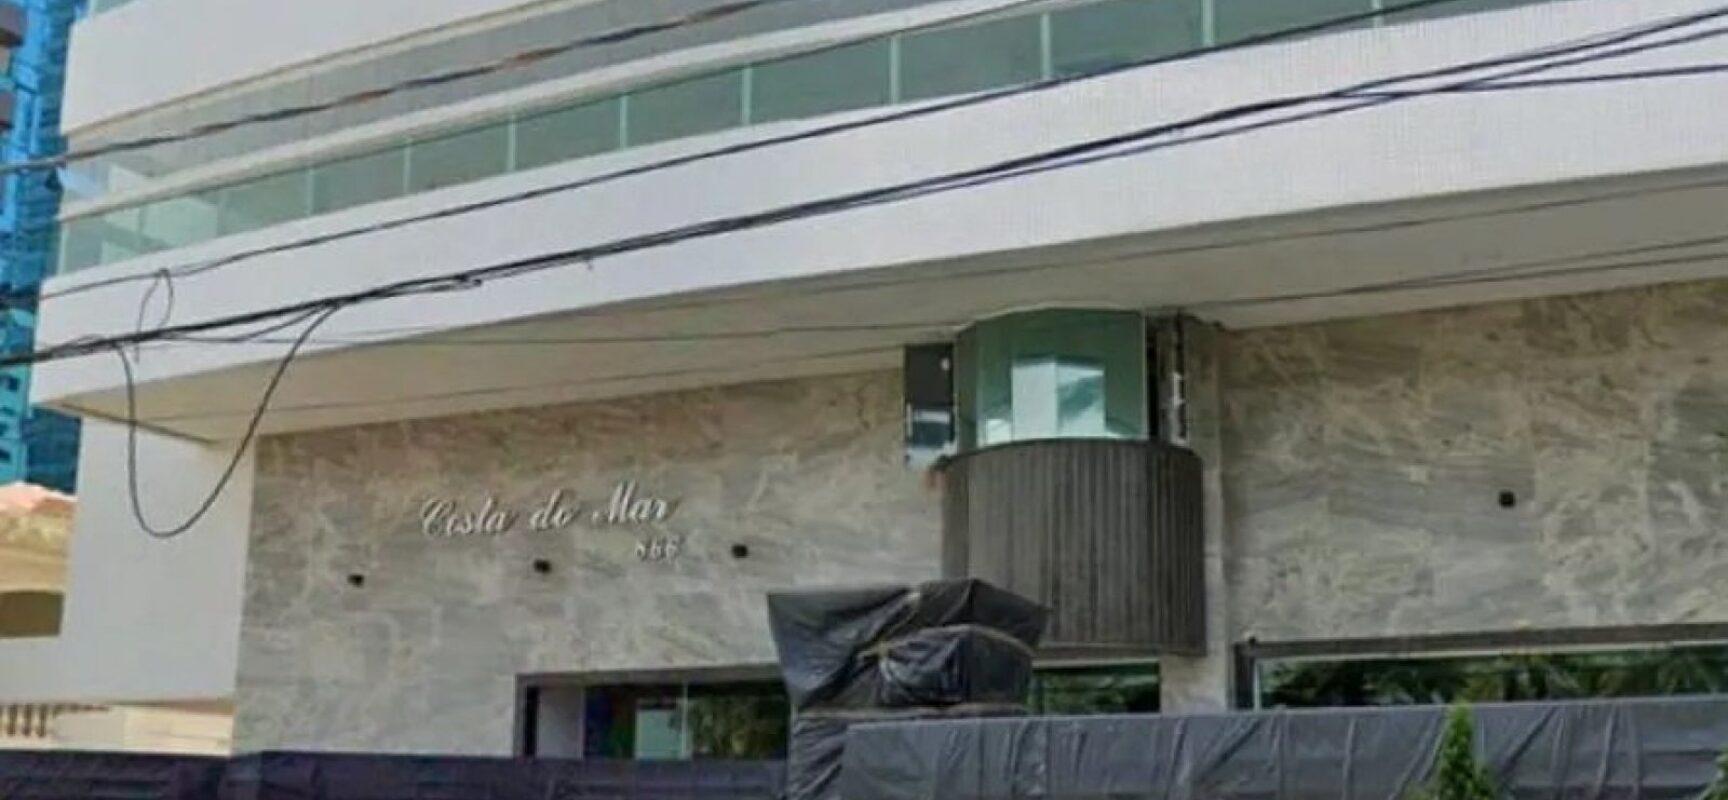 Menina de 6 anos morre ao cair do 11º andar em São Paulo; pai é preso